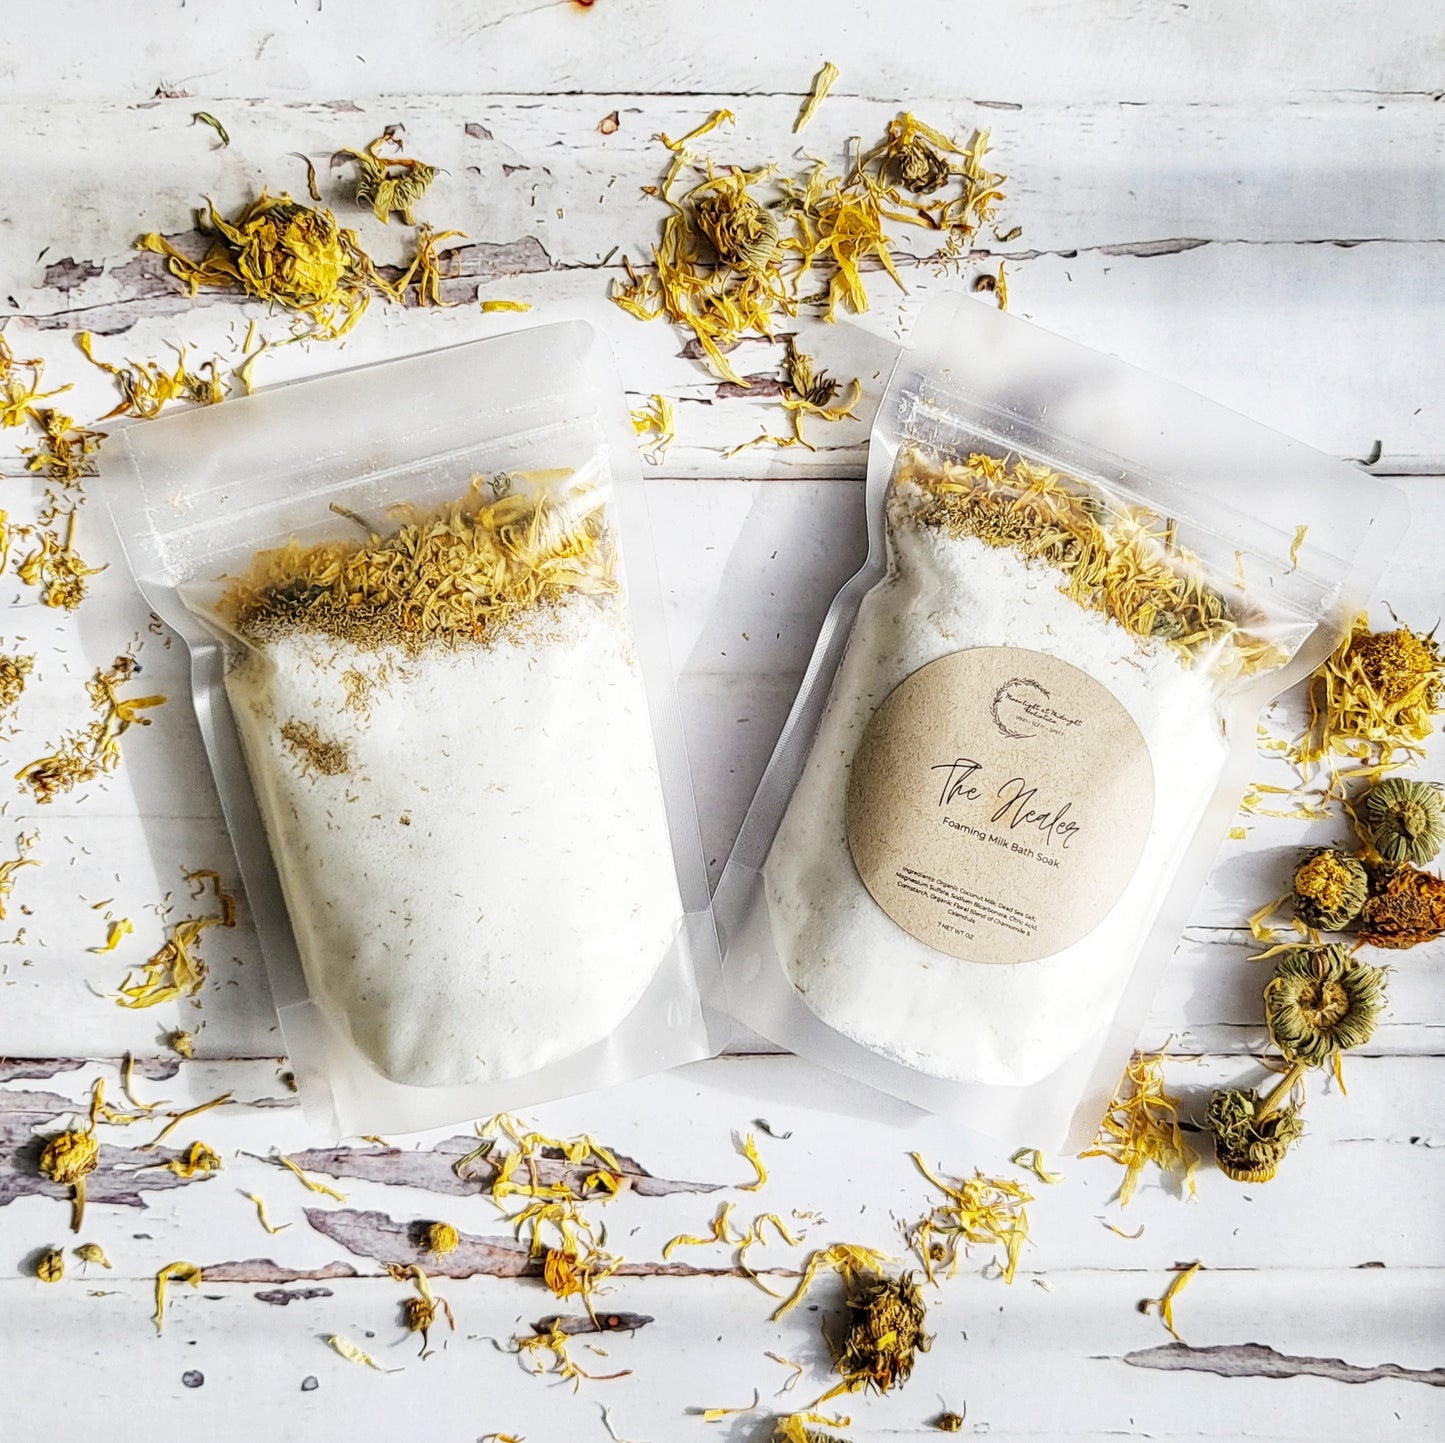 The HEALER Bath Salt | Coconut Milk & Calendula | Moisturizing Floral Bath Soak | Organic Vegan Milk Bath Soak